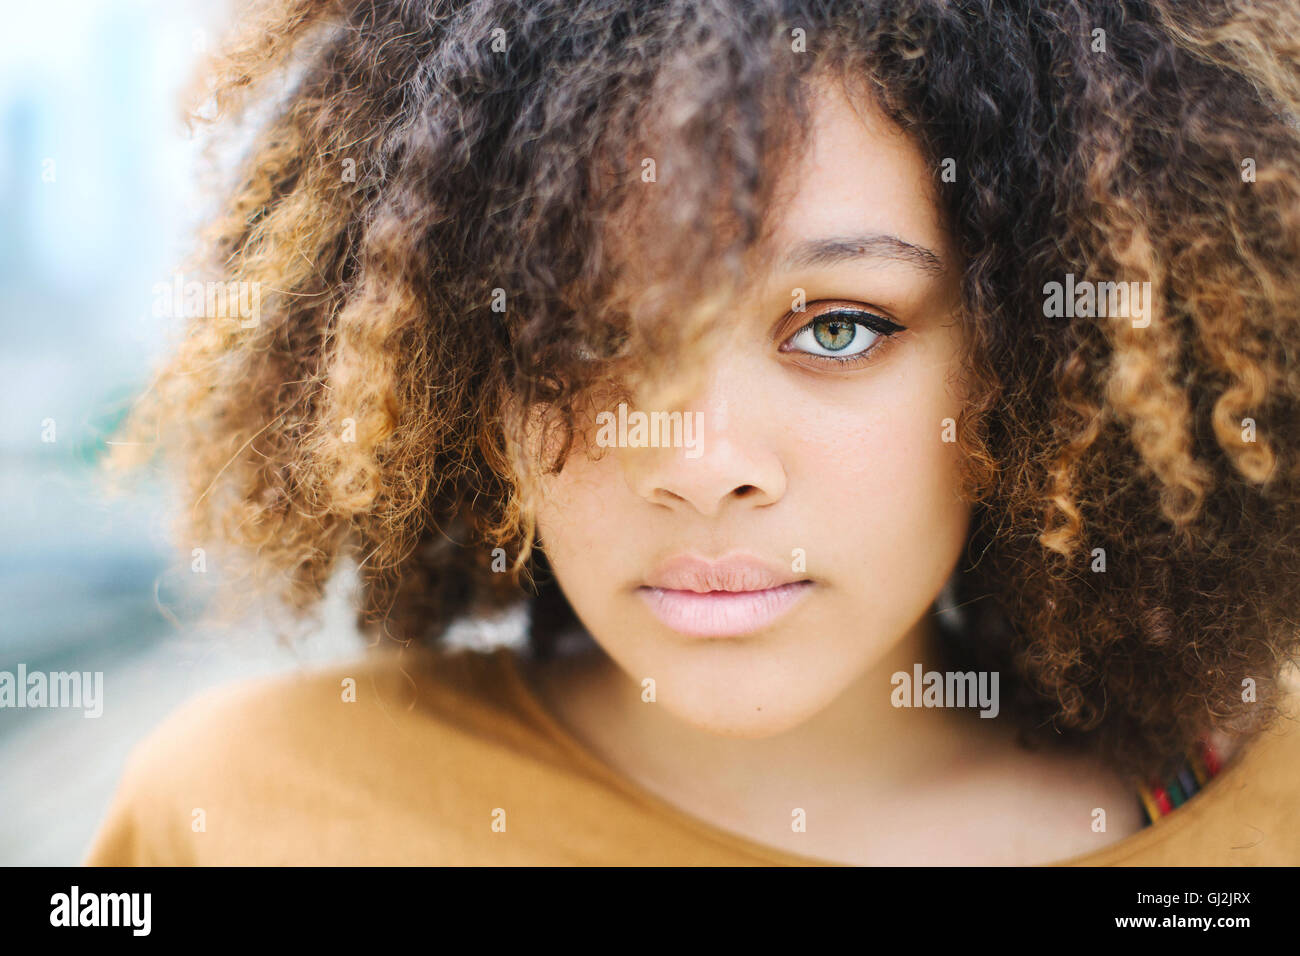 Portrait de femme avec afro looking at camera Banque D'Images